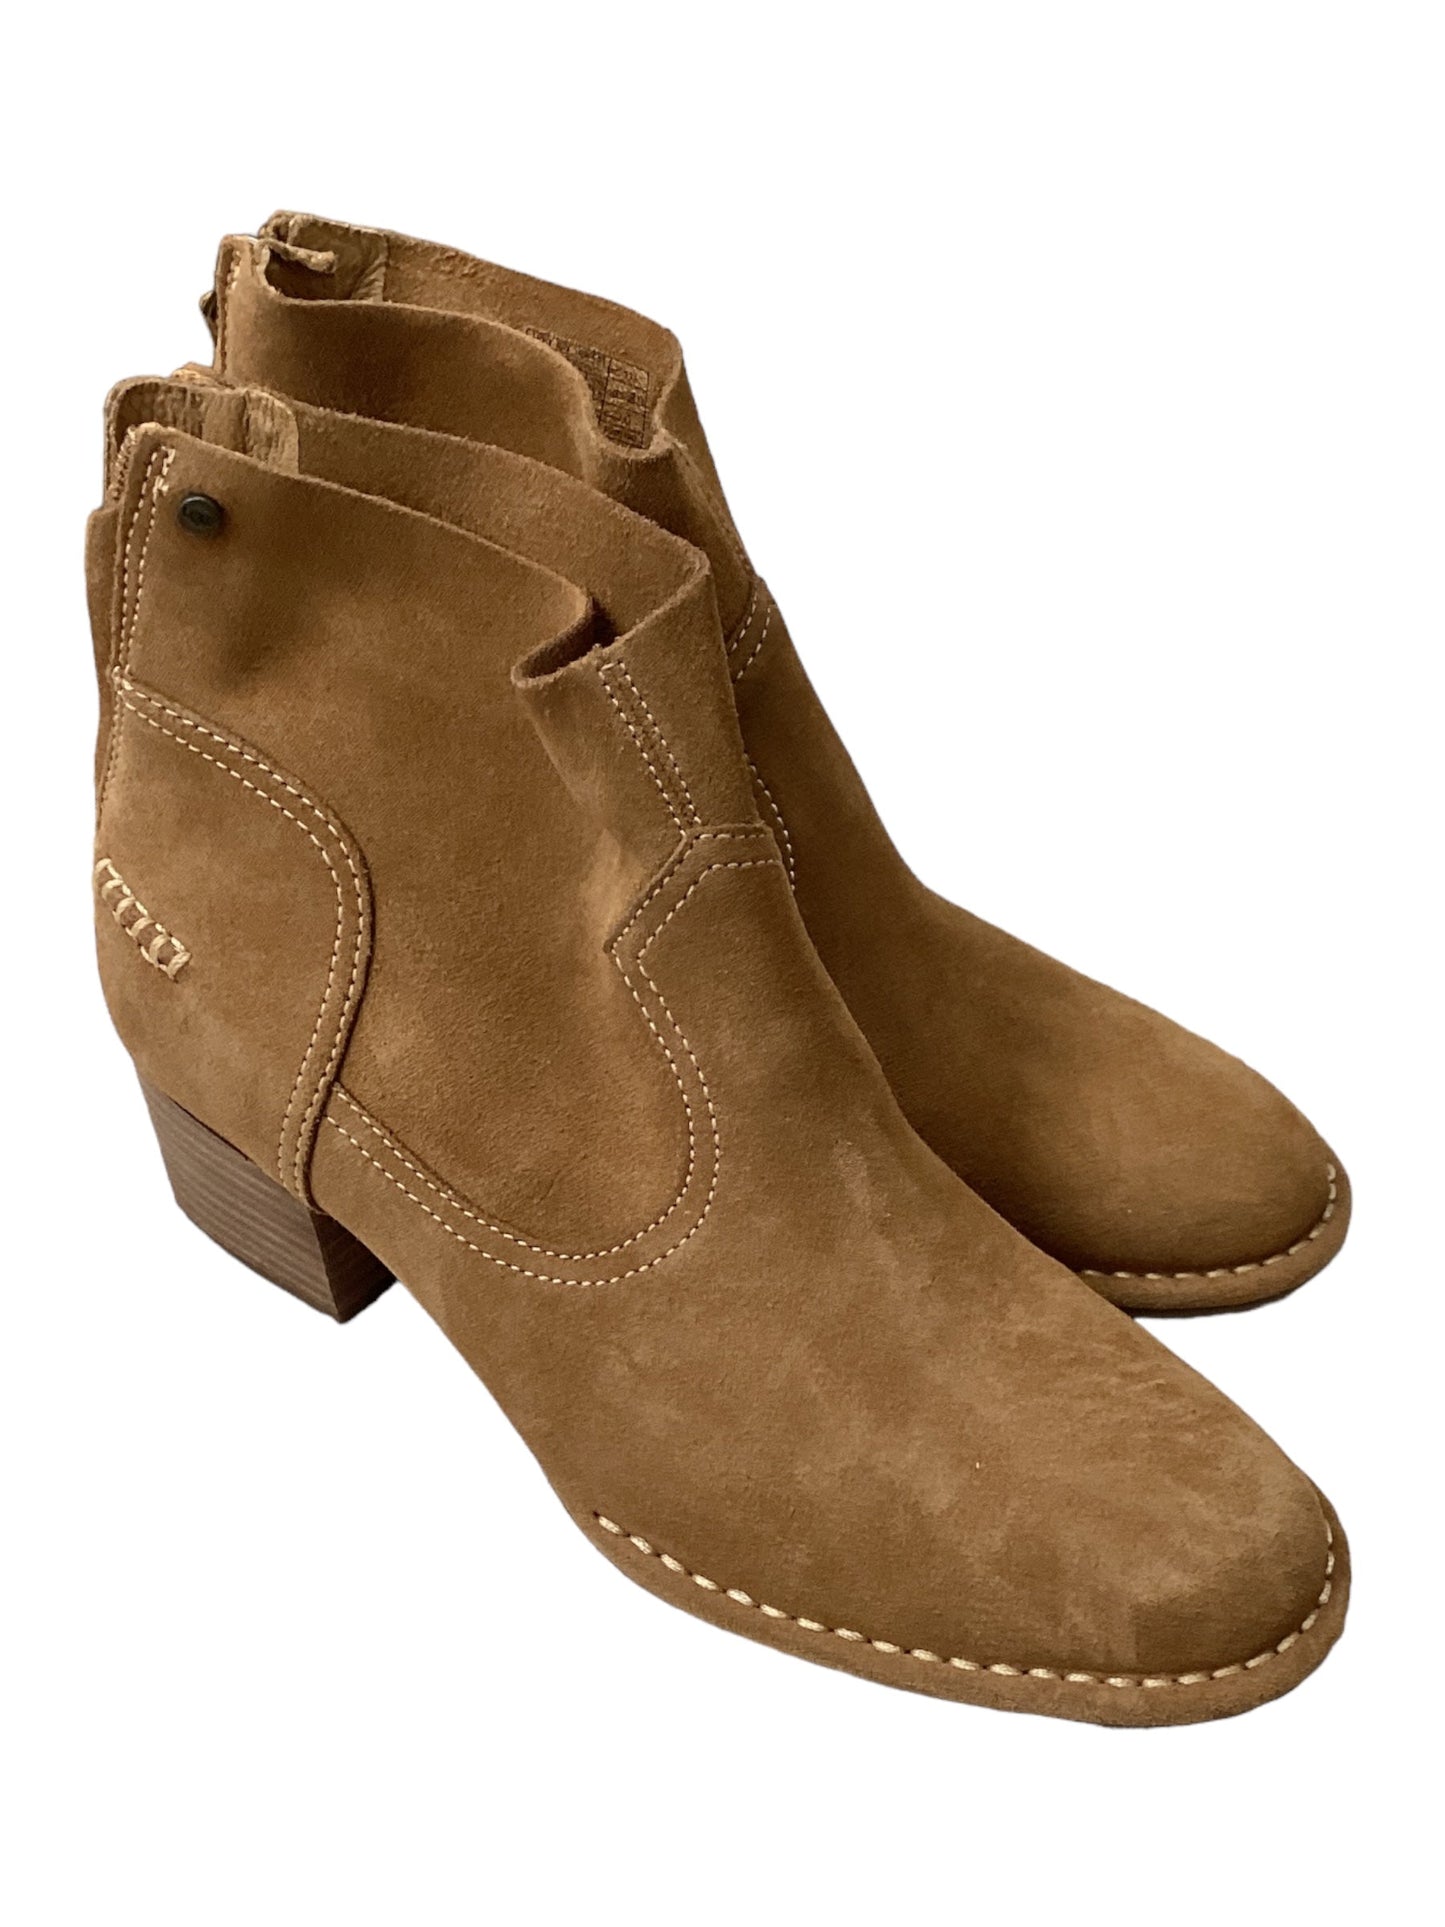 Designer Brown Boots Ankle Heels Ugg, Size 8.5